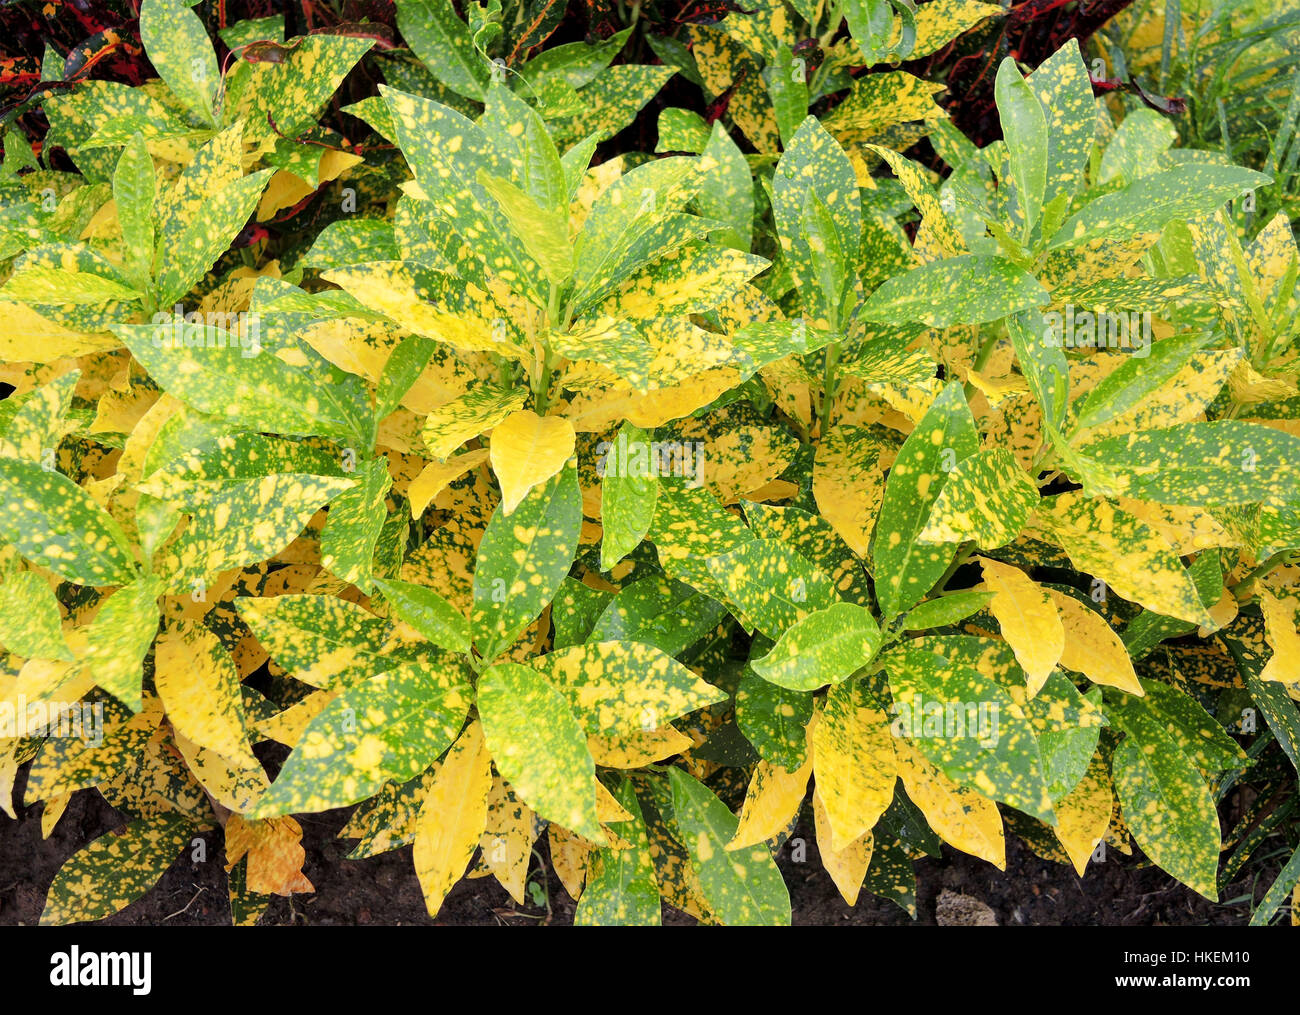 Colorful leaves of croton plant or Codiaeum variegatum. Stock Photo